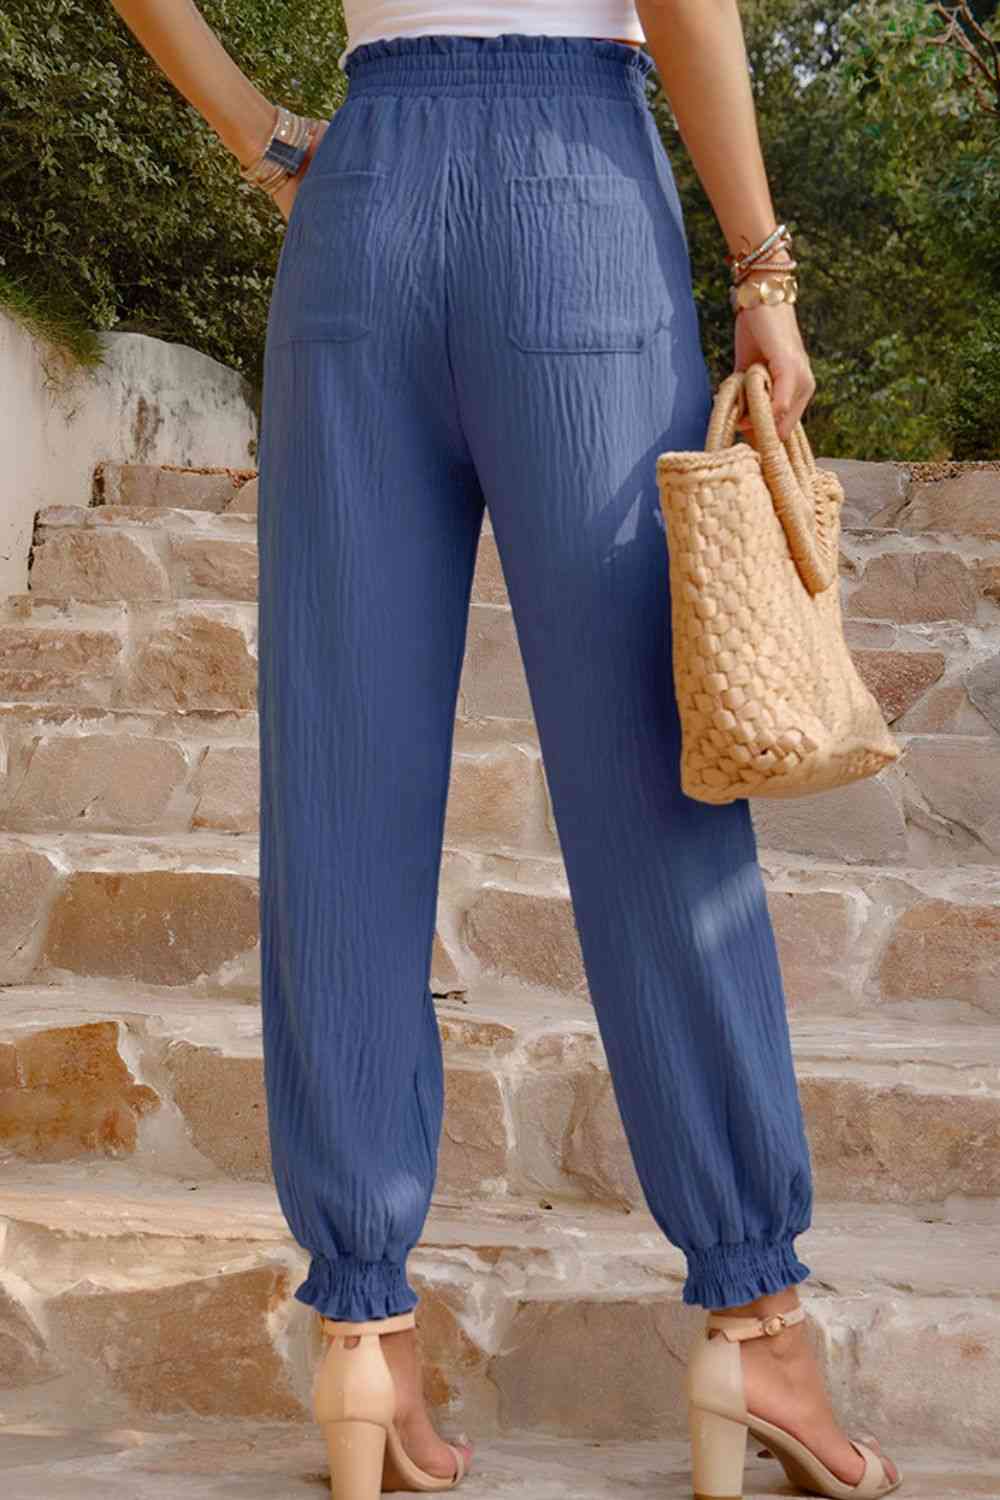 Pantalones texturizados con cintura fruncida y bolsillos